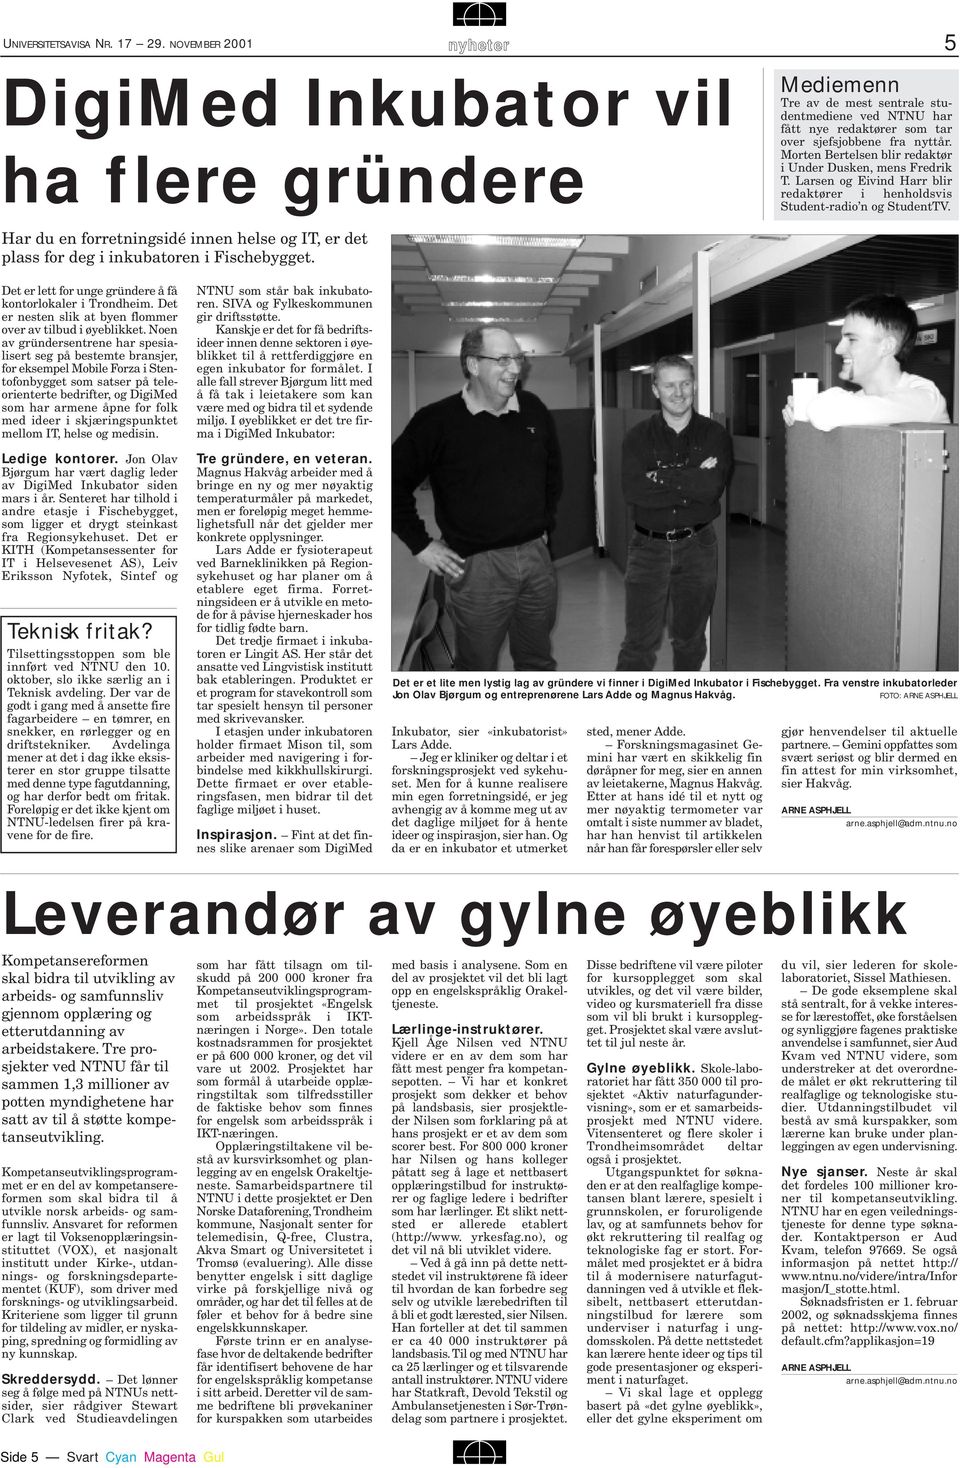 Morten Bertelsen blir redaktør i Under Dusken, mens Fredrik T. Larsen og Eivind Harr blir redaktører i henholdsvis Student-radio n og StudentTV.